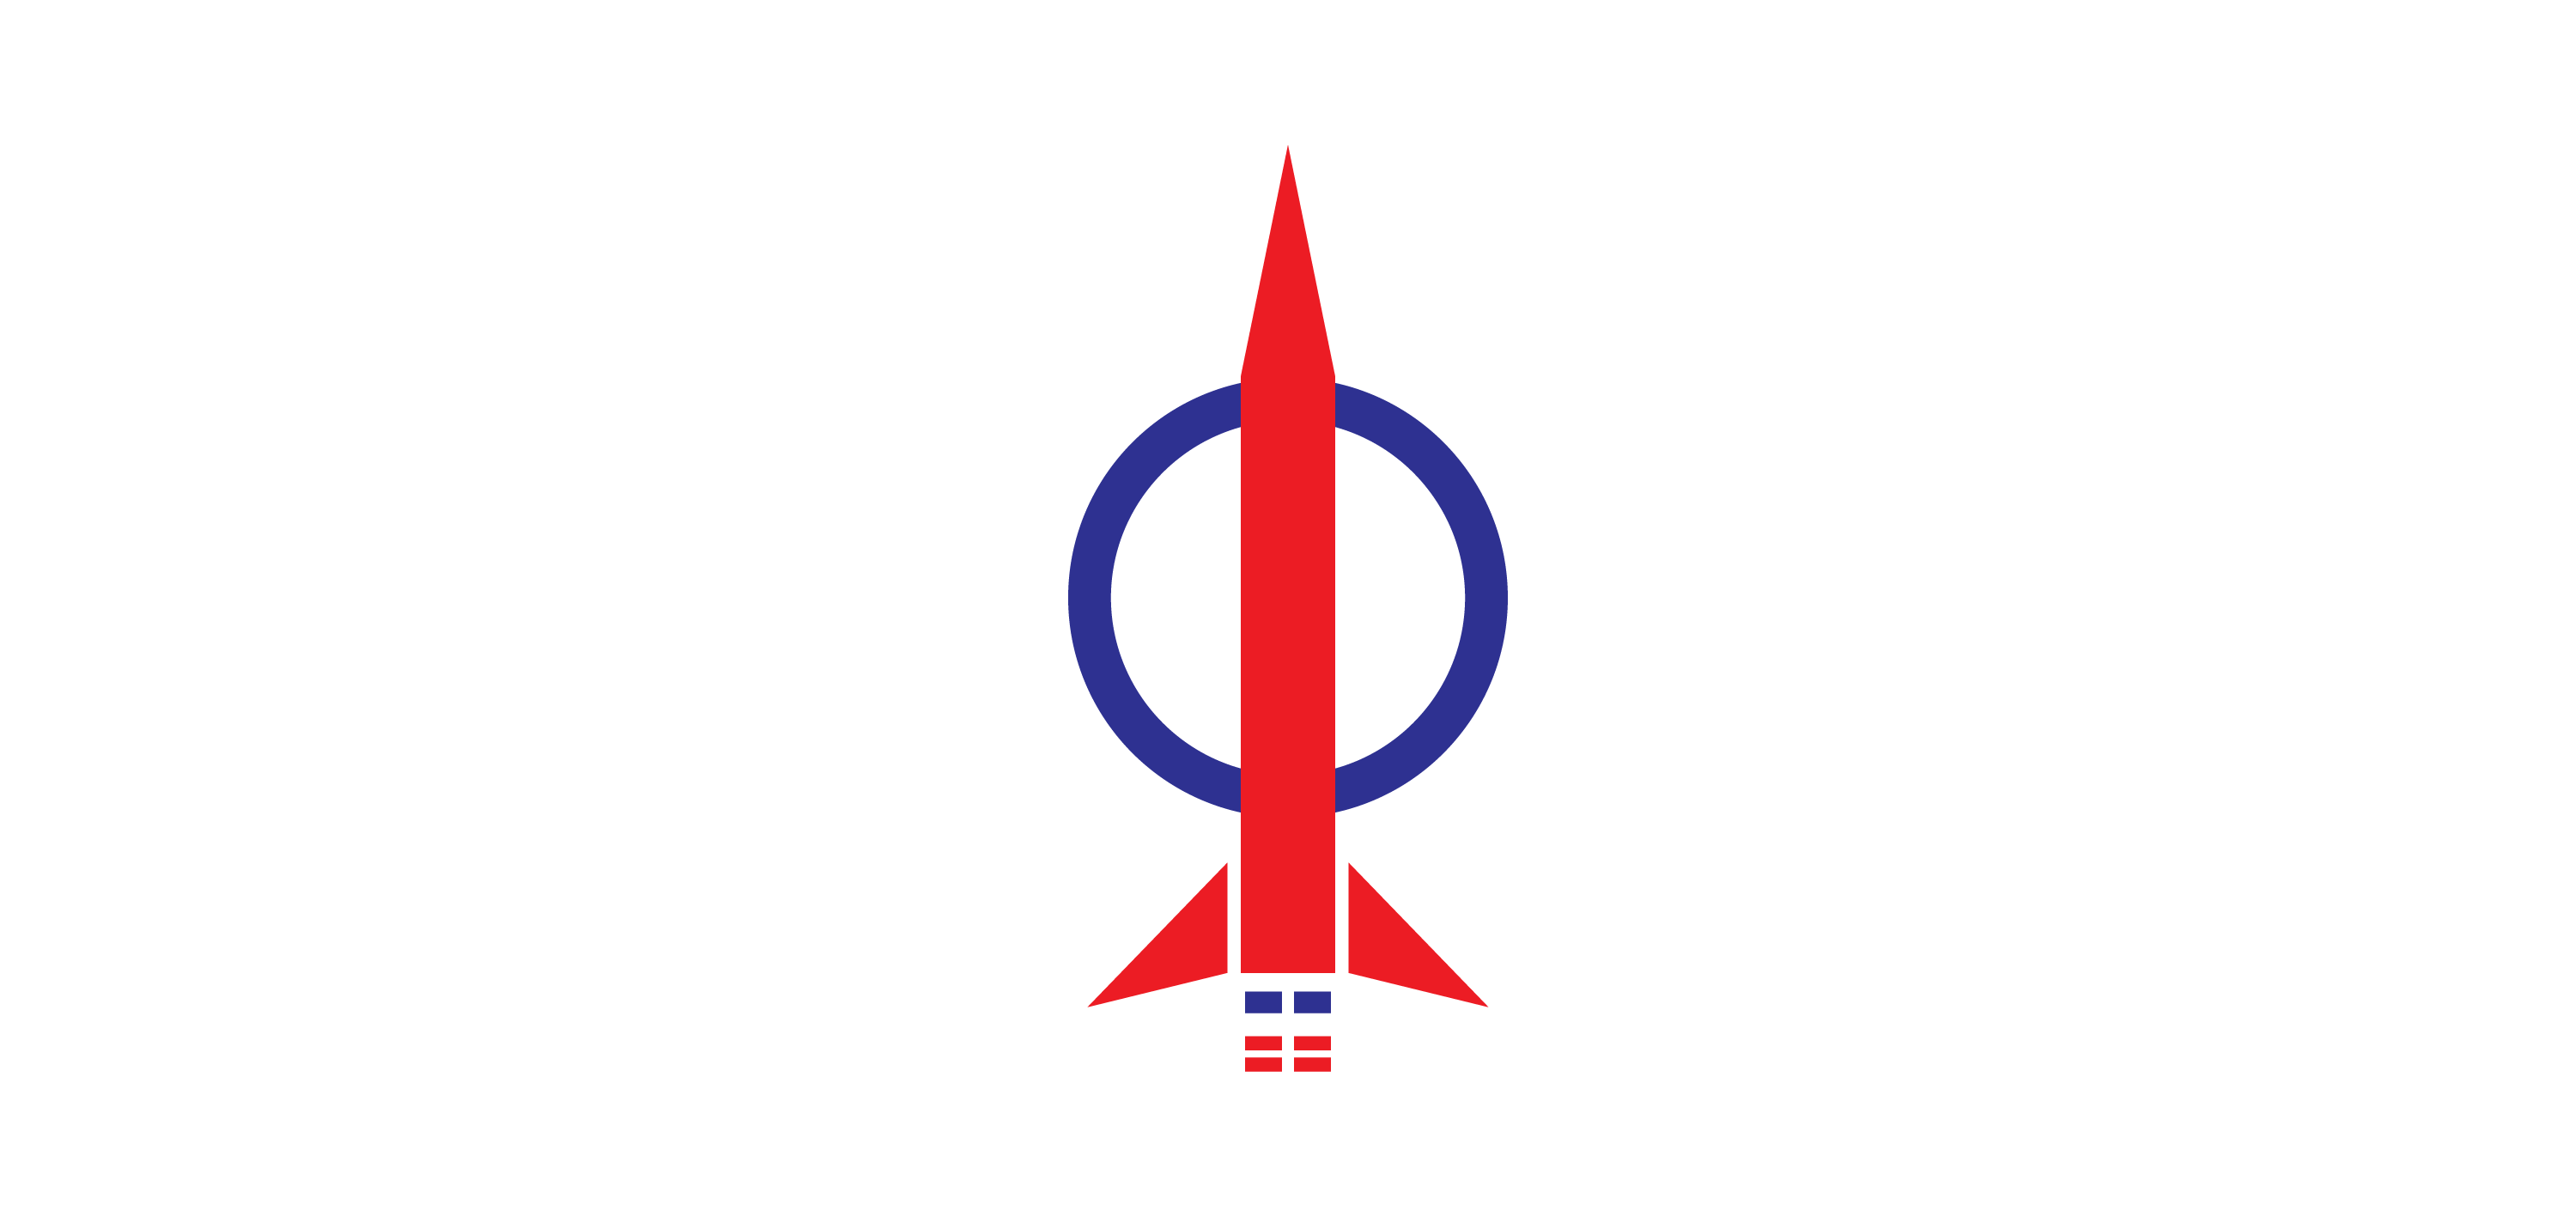 DAP Logo Vector